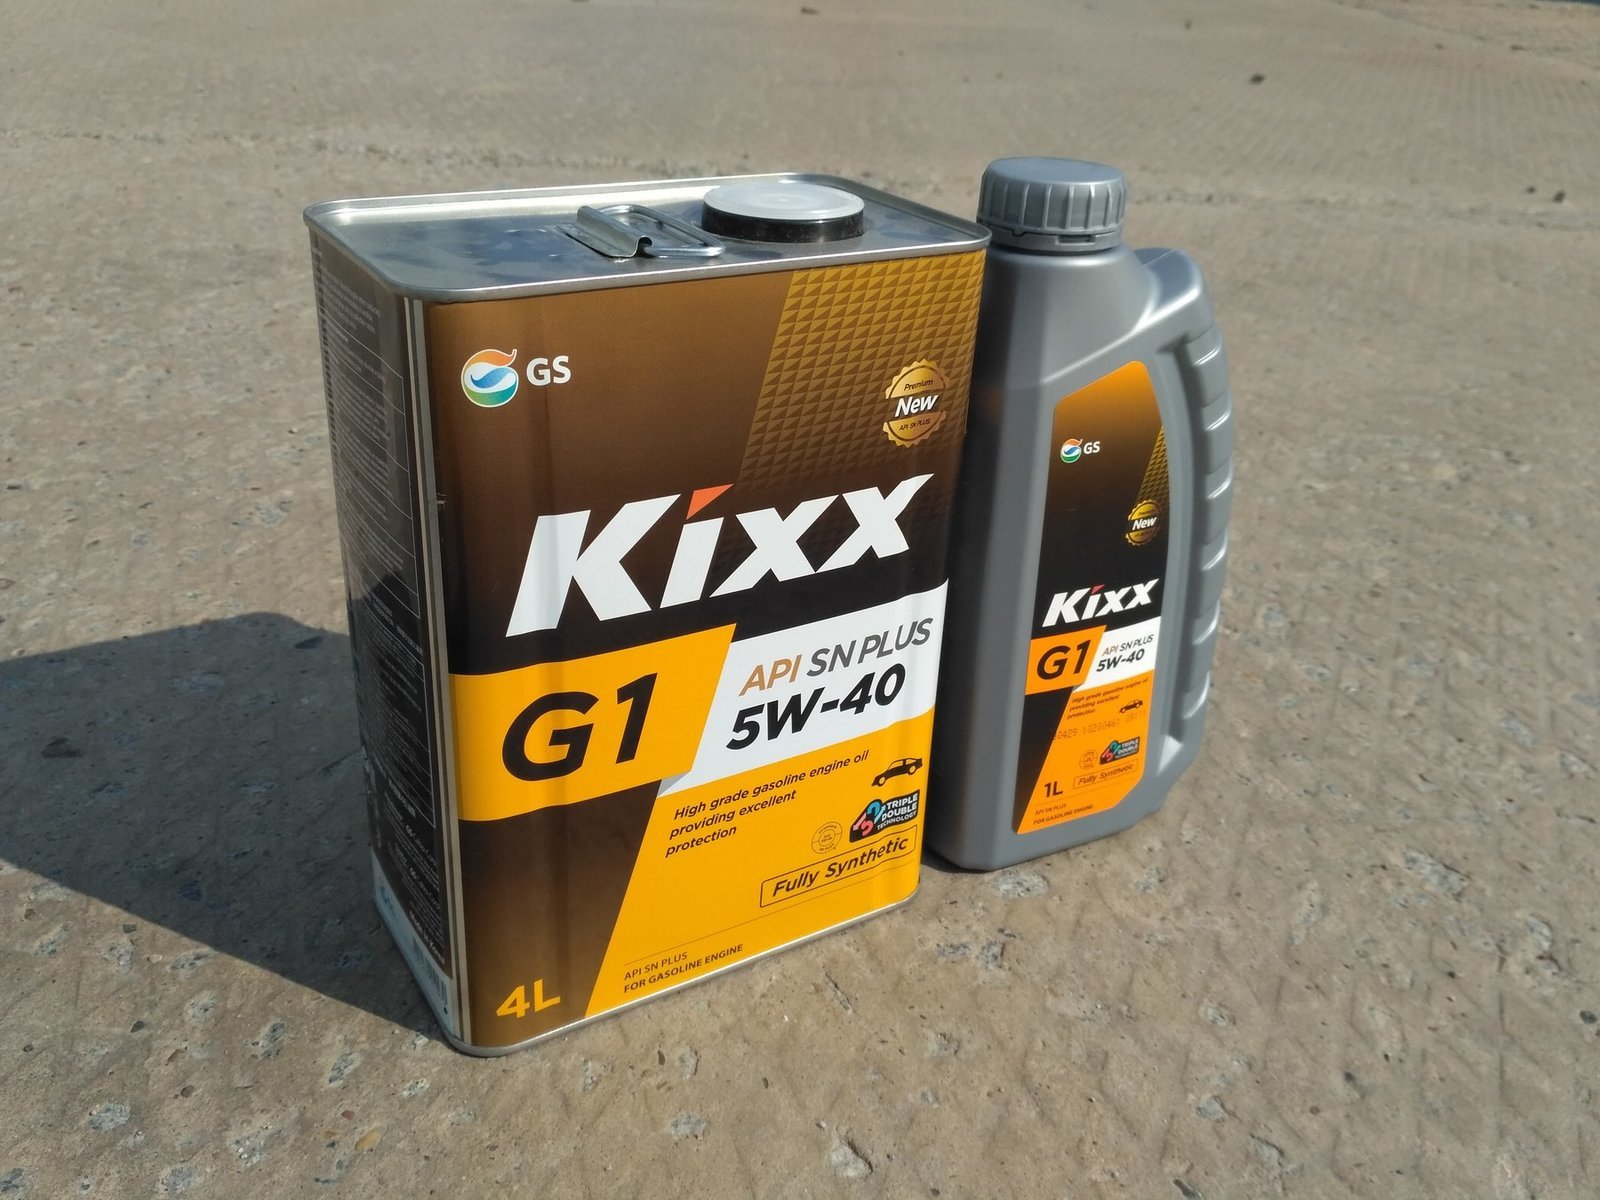 Kixx G1 5W-40 SN Plus Olie Review